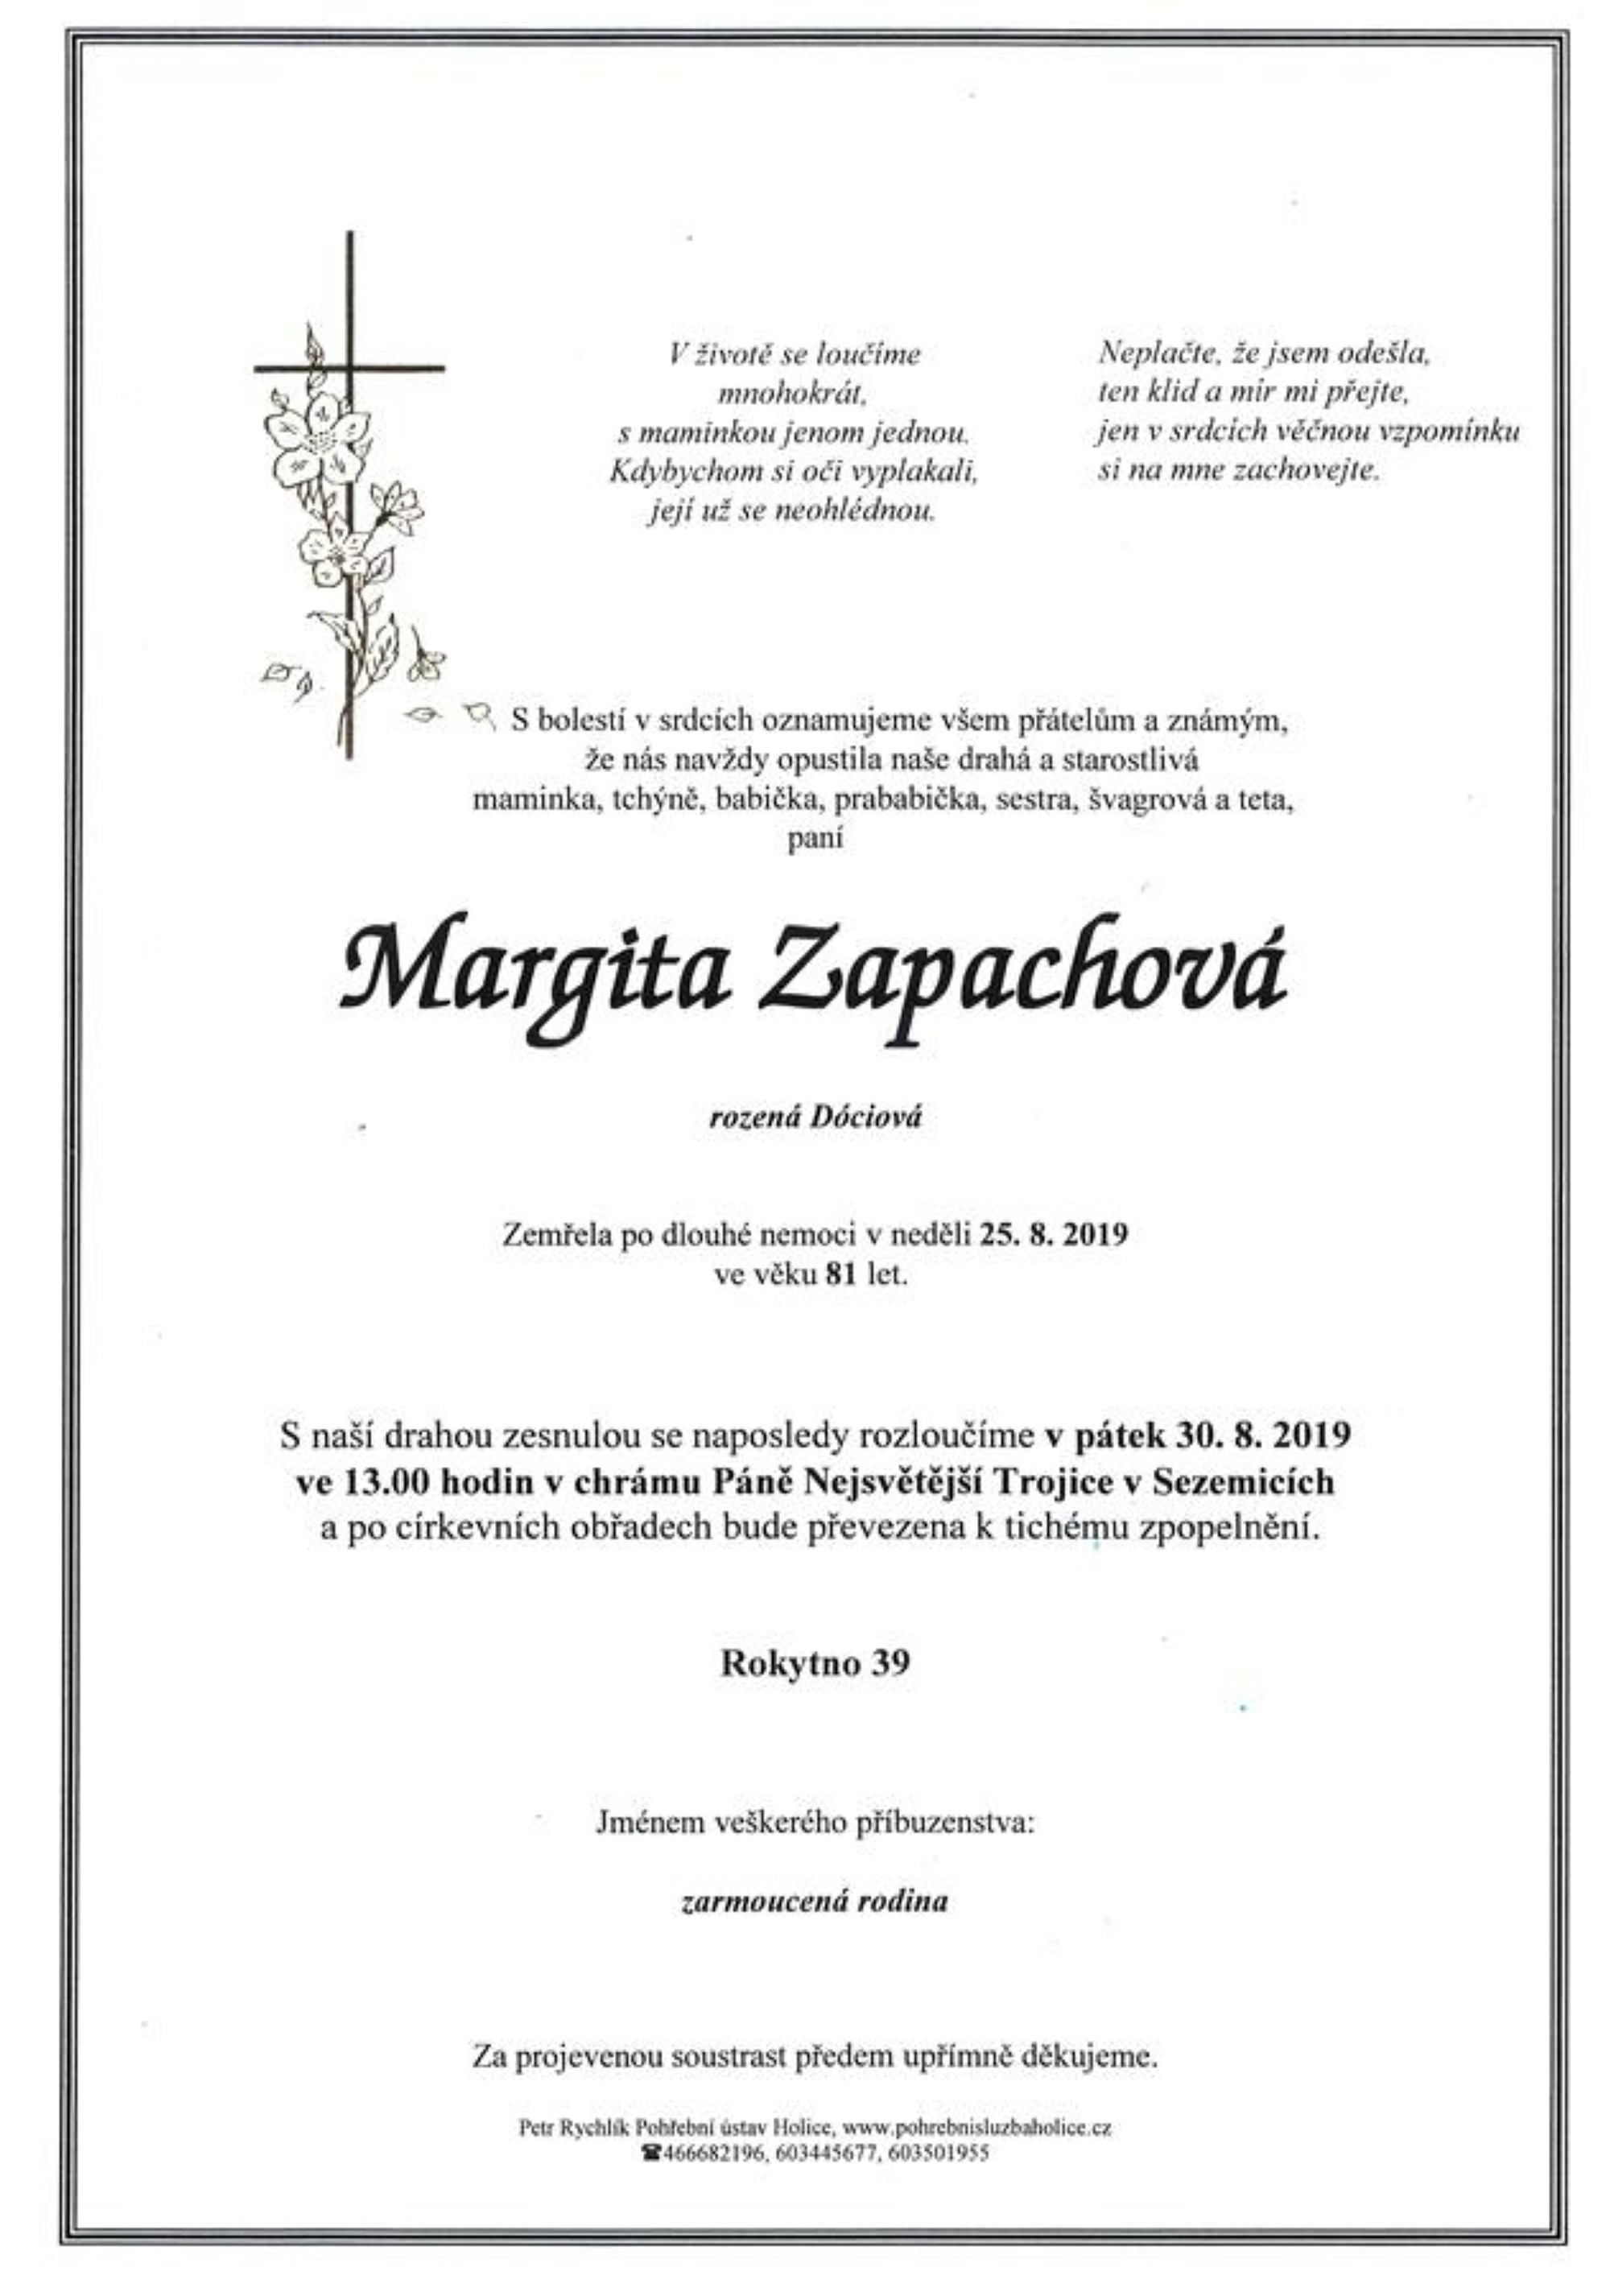 Margita Zapachová